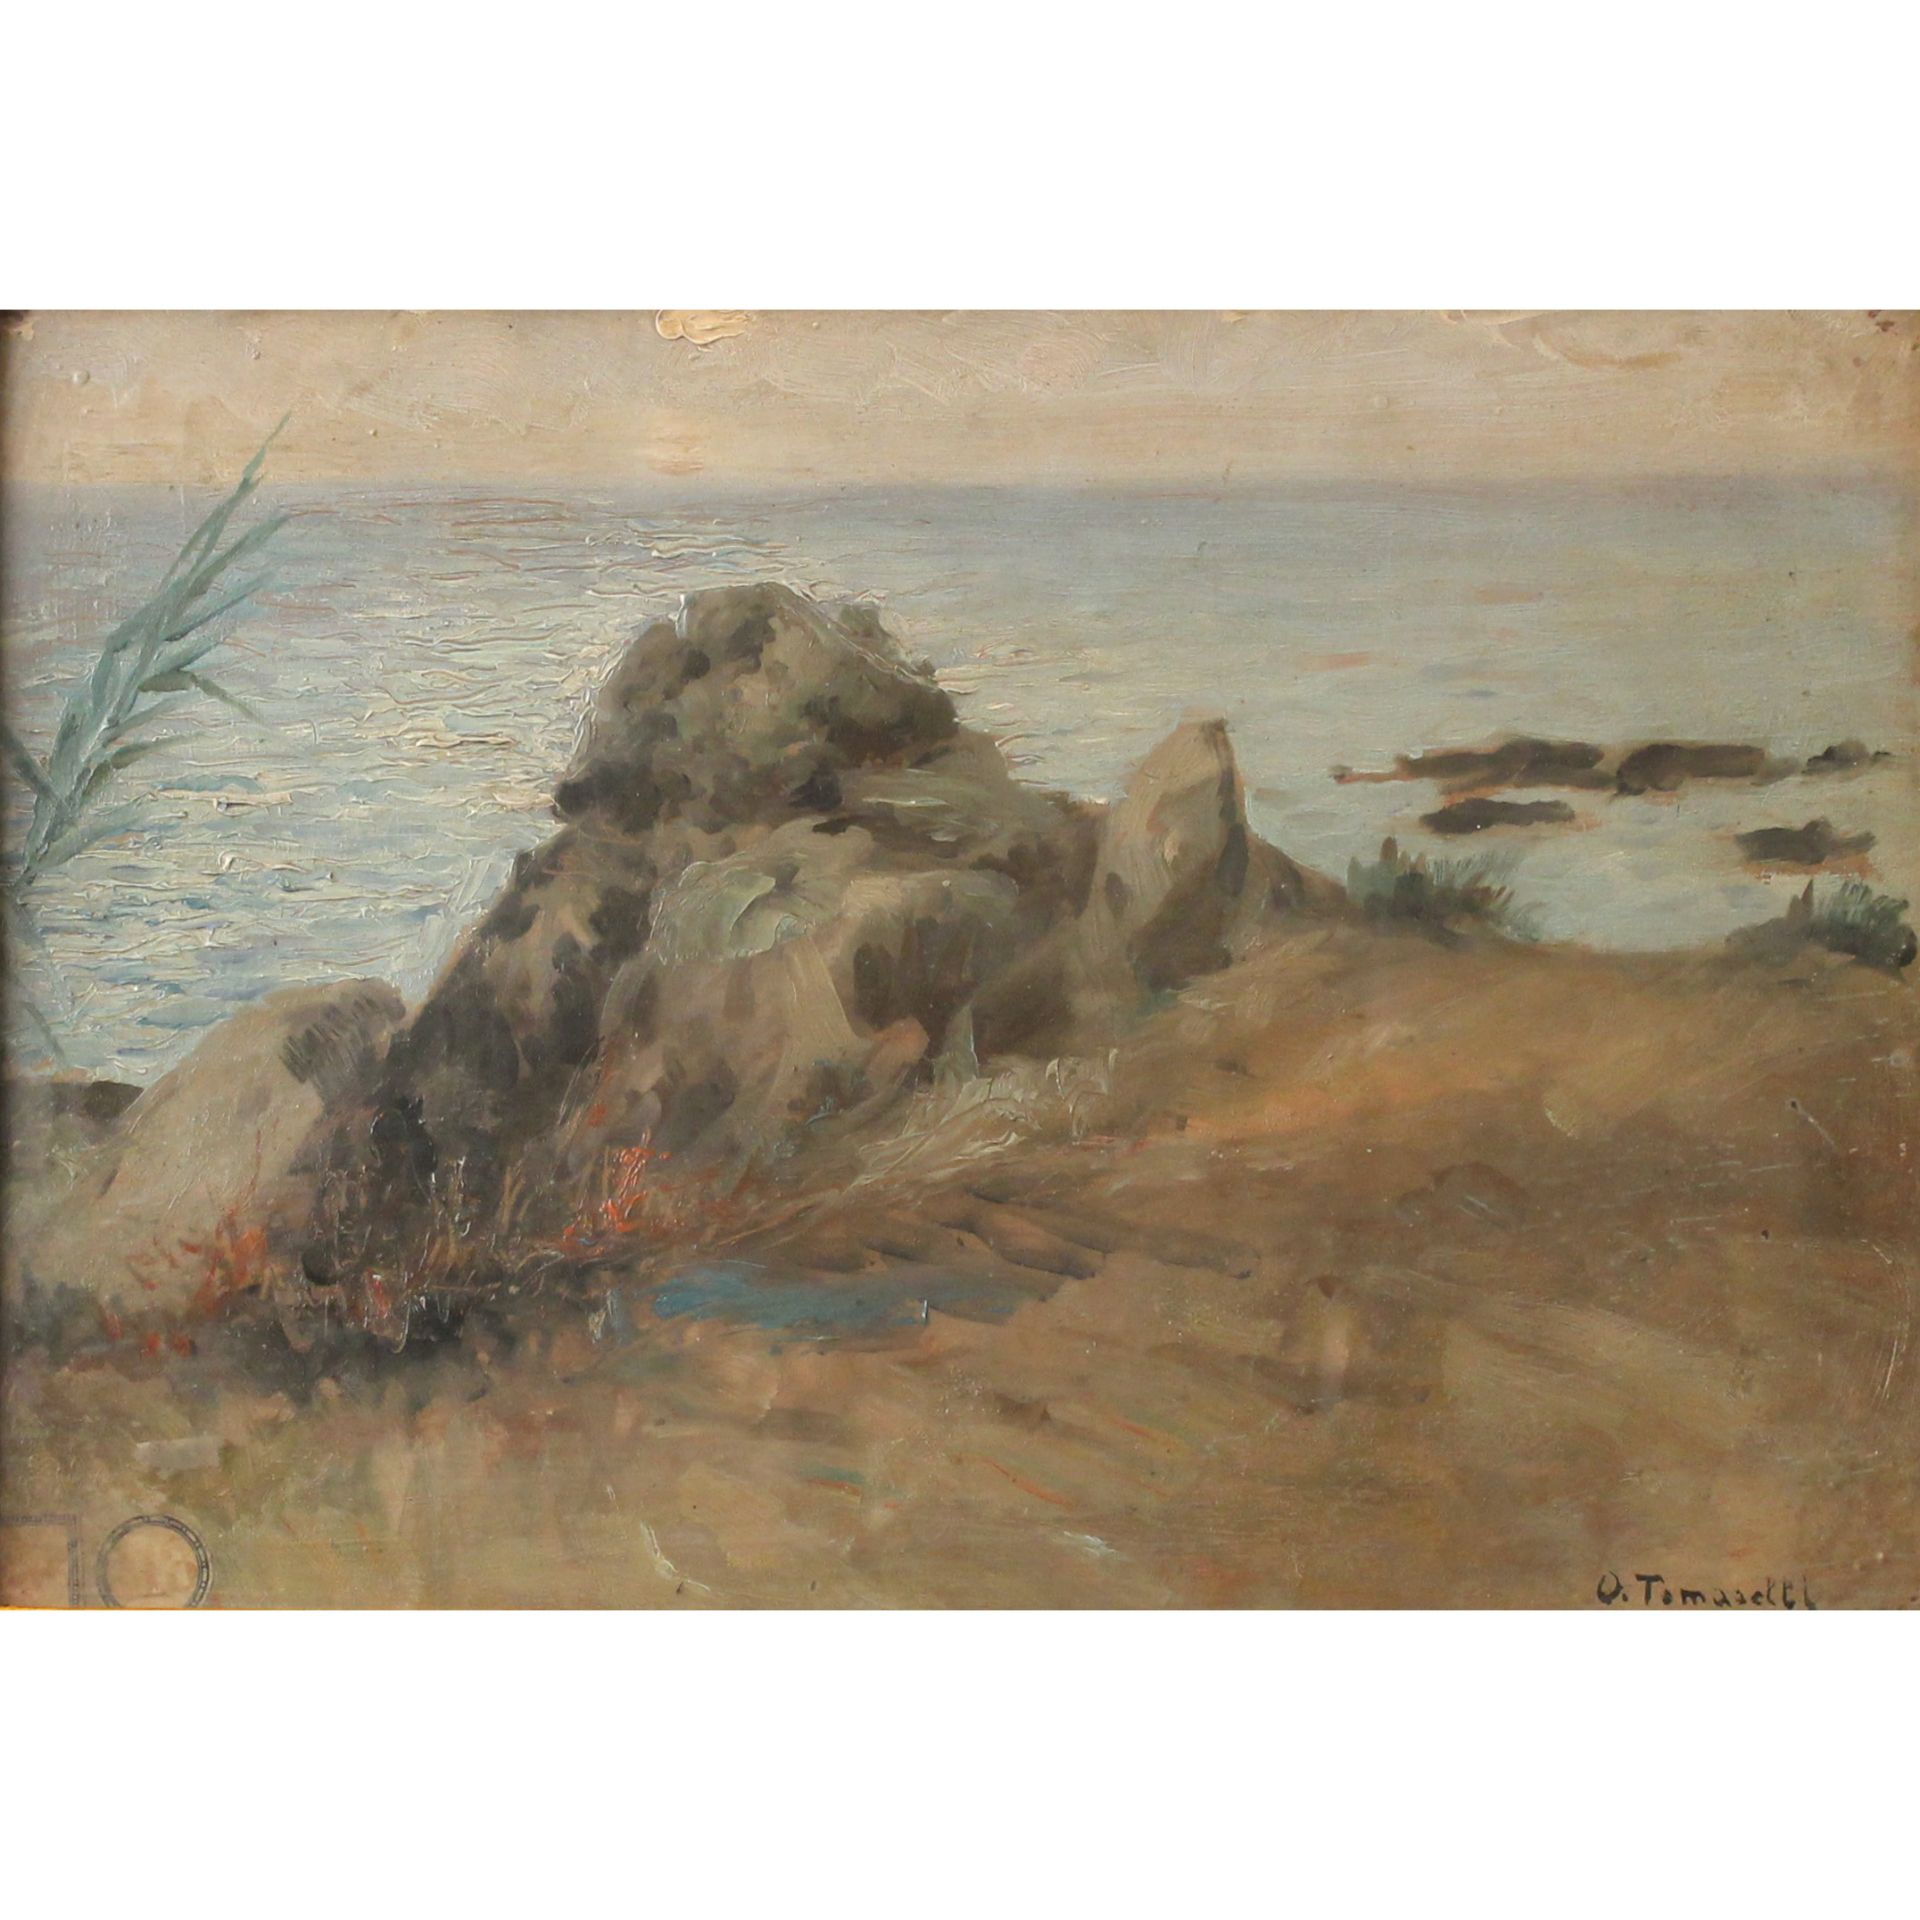 Onofrio Tomaselli (1866/1956) "Paesaggio marino" - "Seascape"